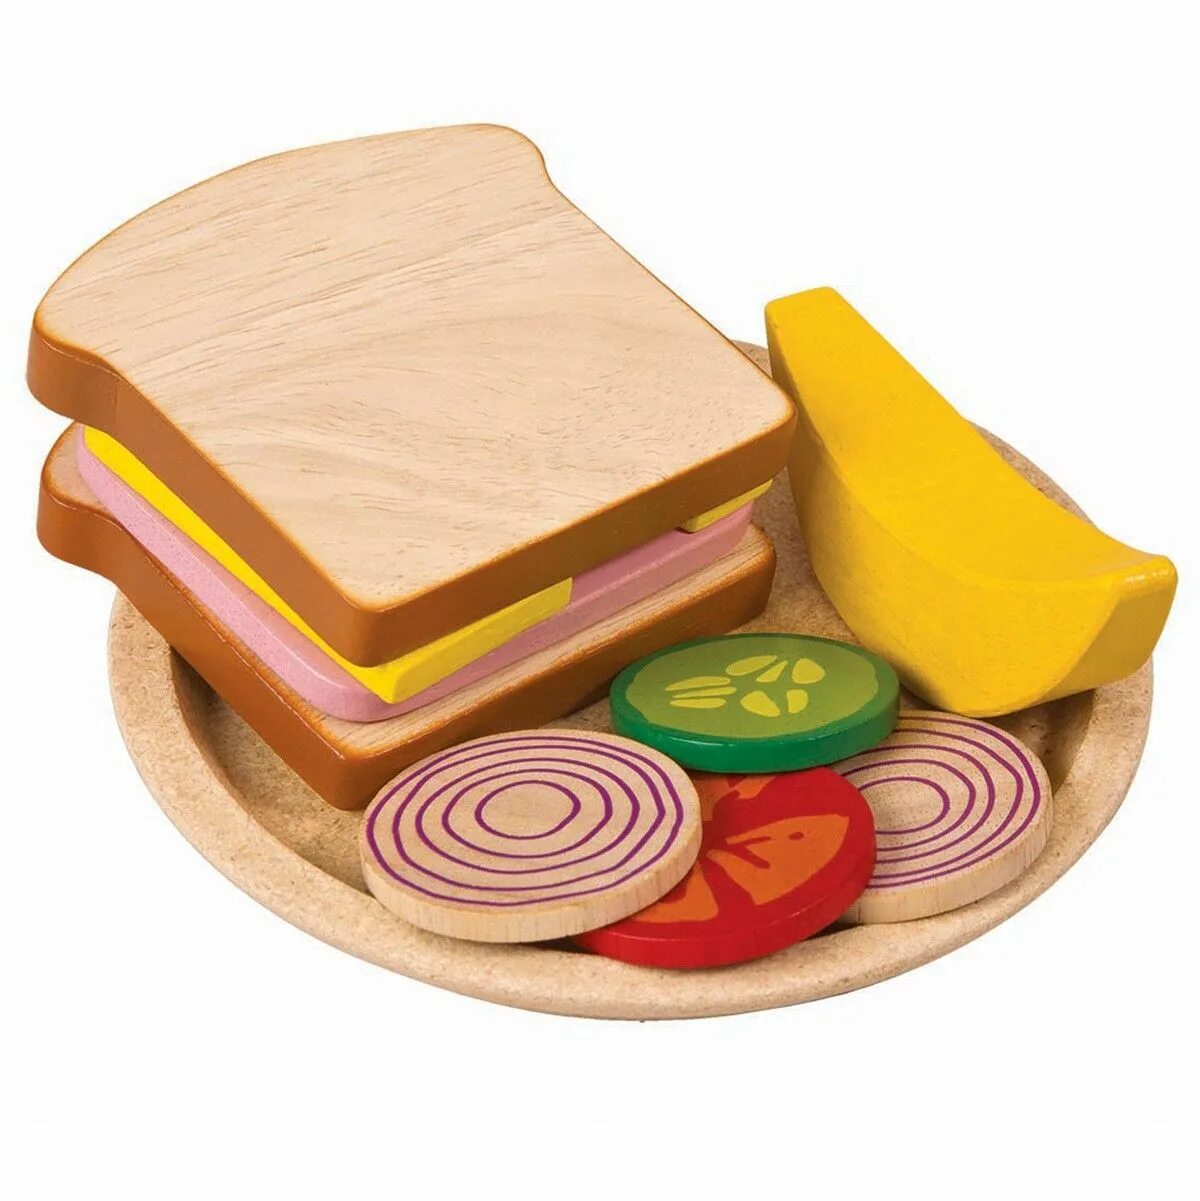 Игрушка бутерброд. Игрушка бутерброд для детей. Игрушечный сэндвич. Игрушка сэндвич деревянный. Сэндвичи играть